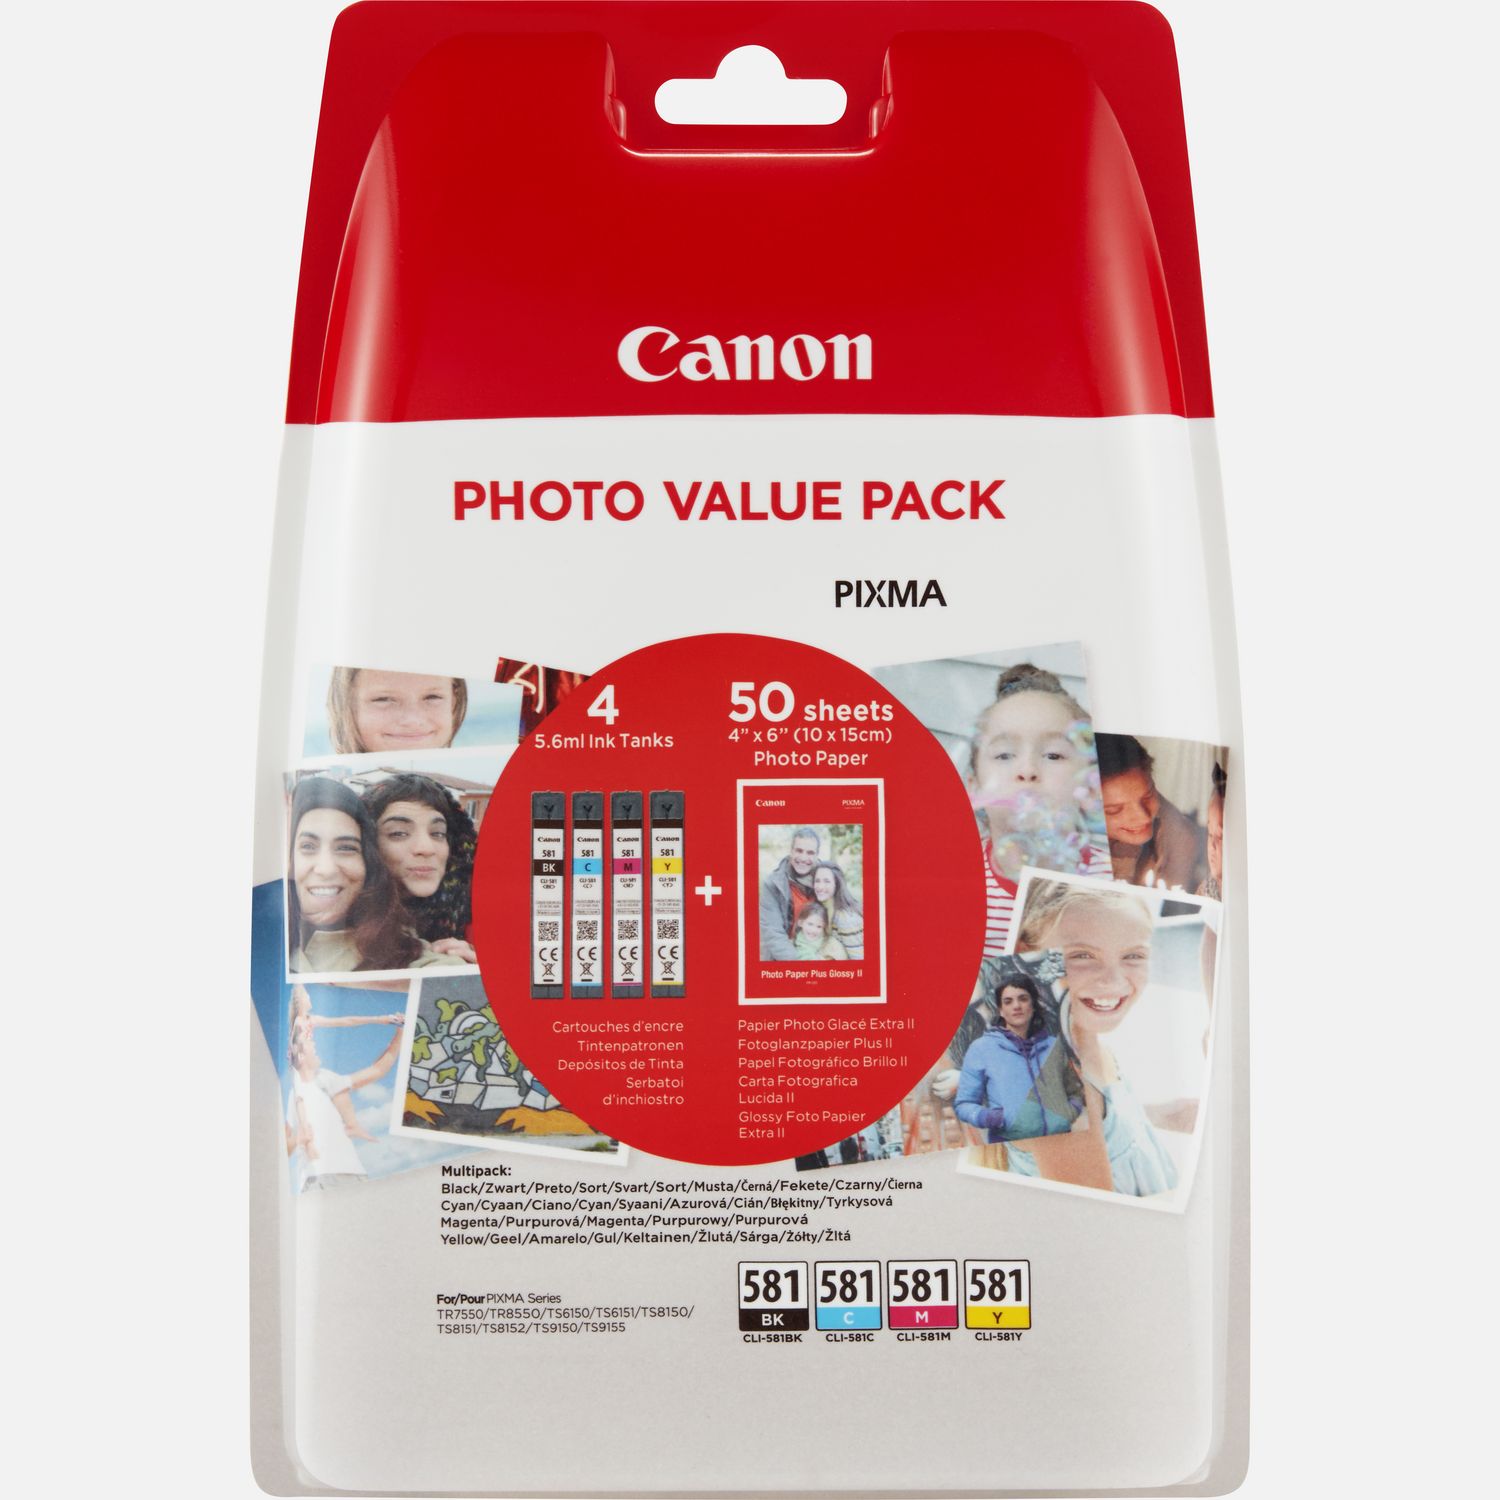 Cartouche Canon CLI 581 / PGI 580 - Toner Services